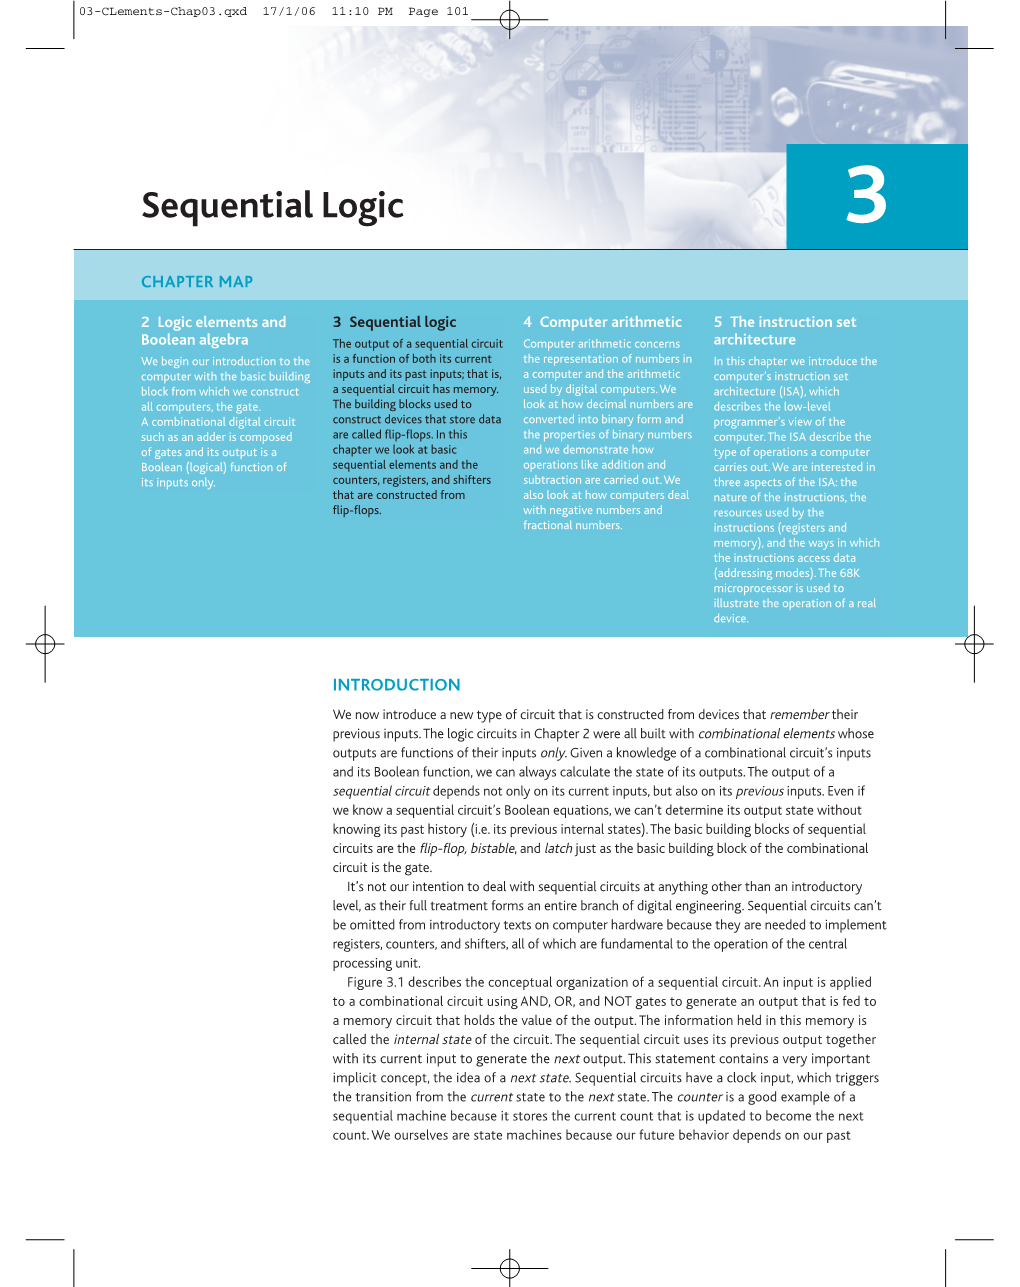 Sequential Logic 3